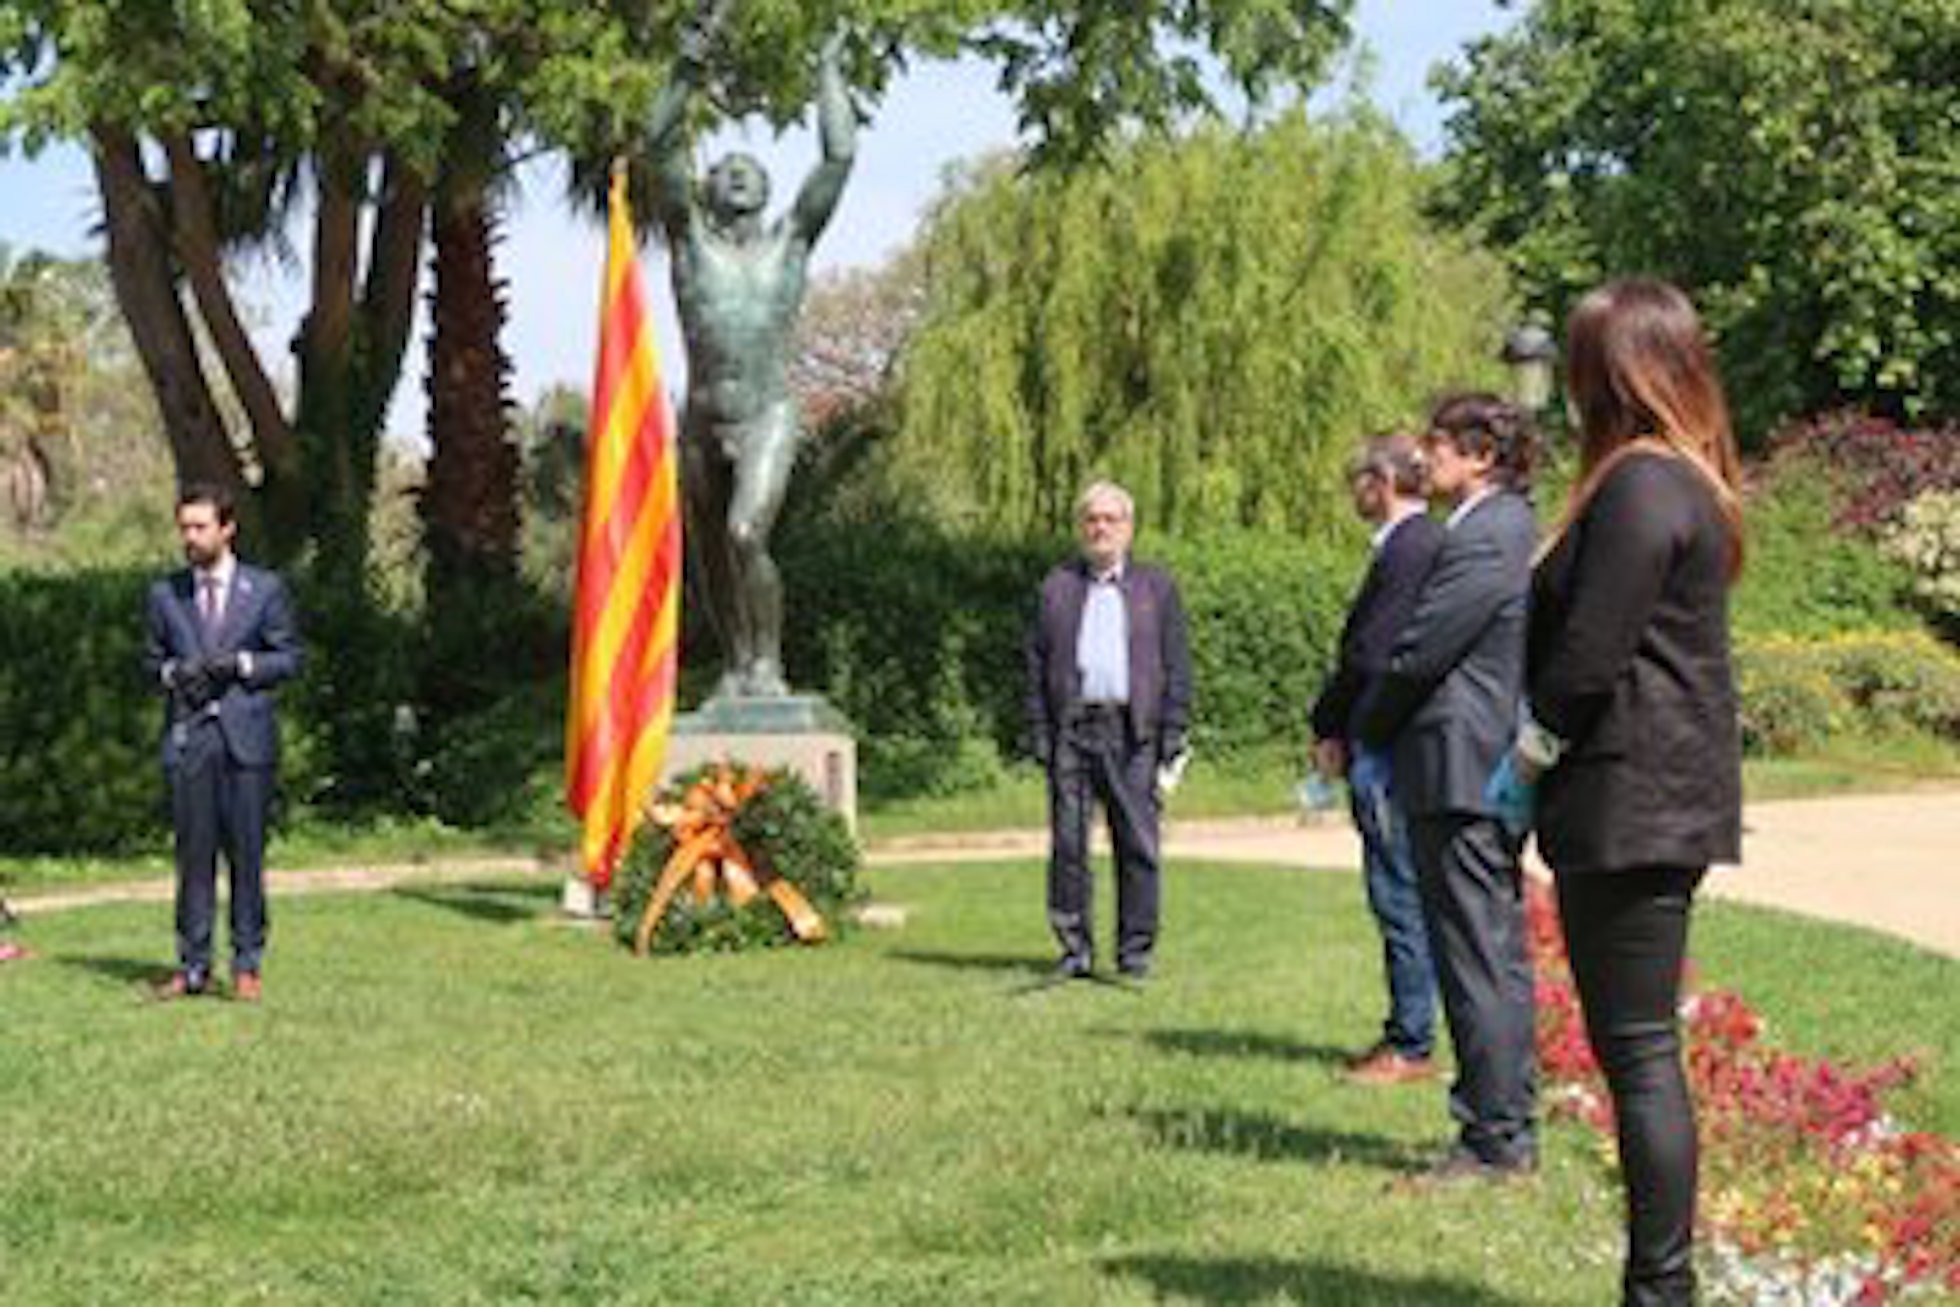 La rendició nazi que es commemora a Catalunya i a Europa, però a Espanya no